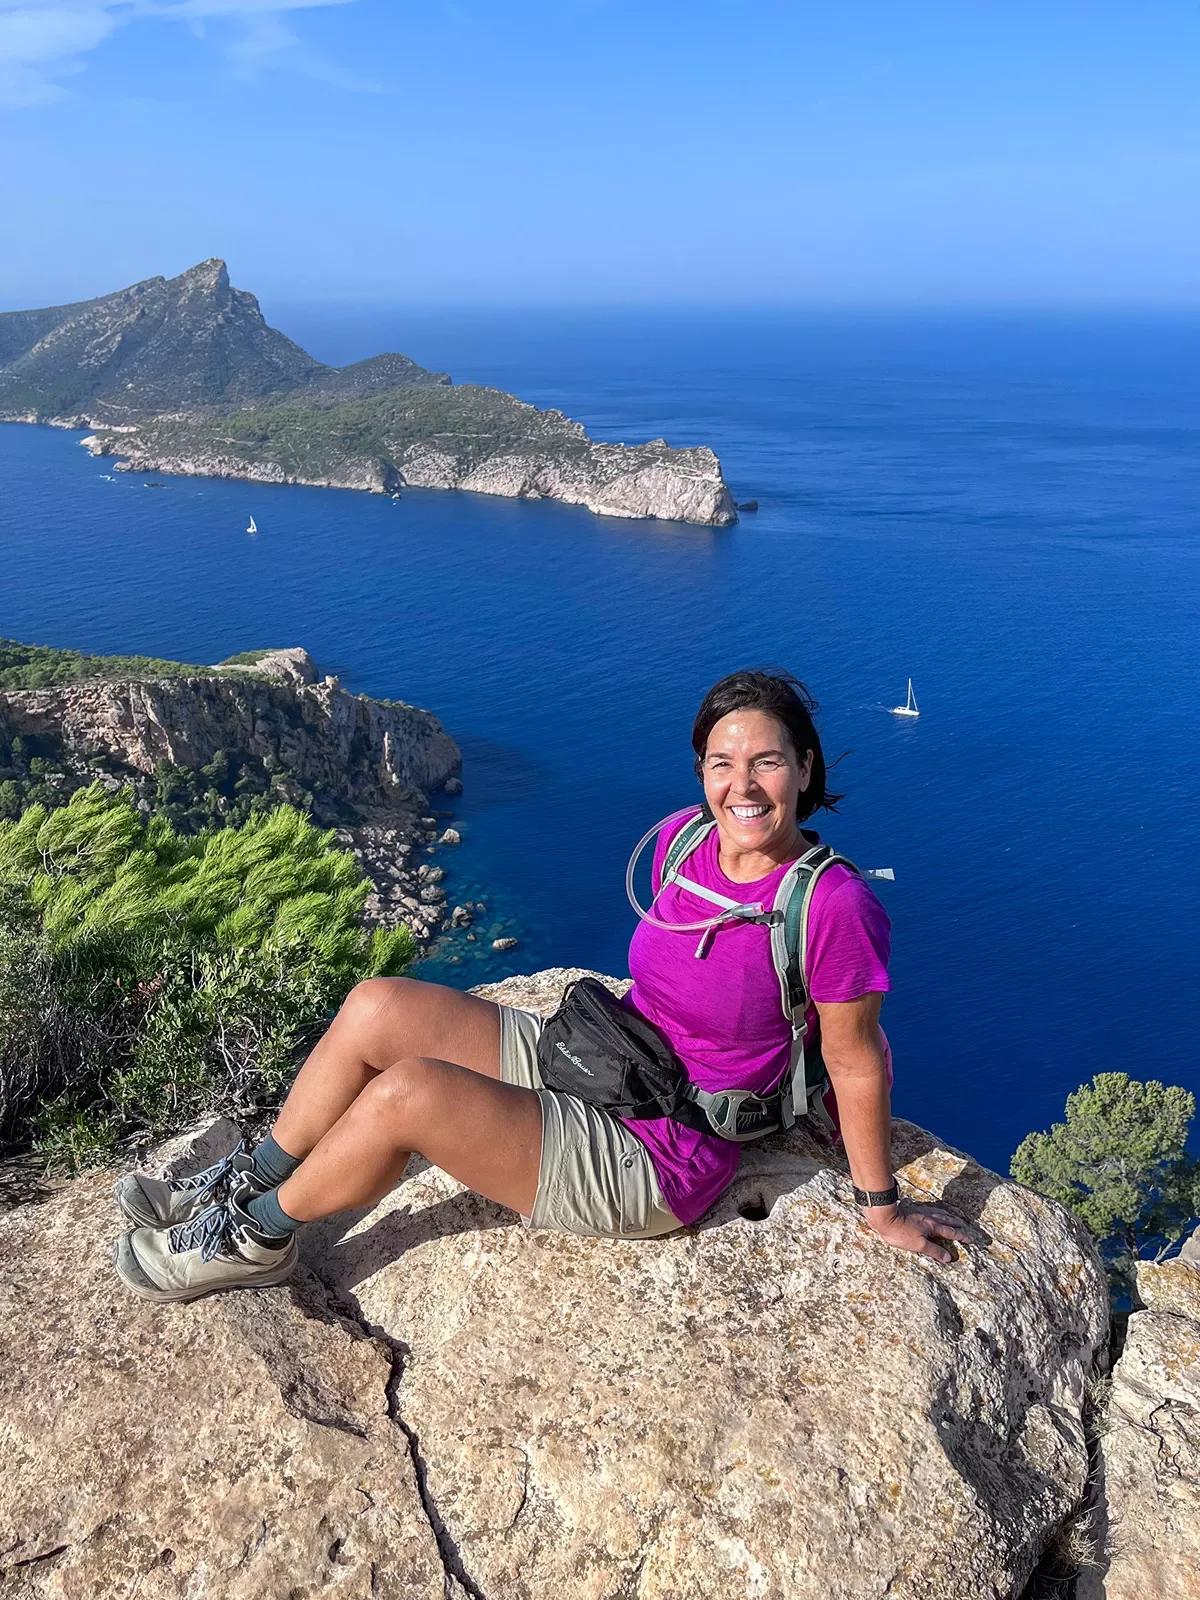 Guest posing on rock overlooking cliffside, ocean, island behind her.